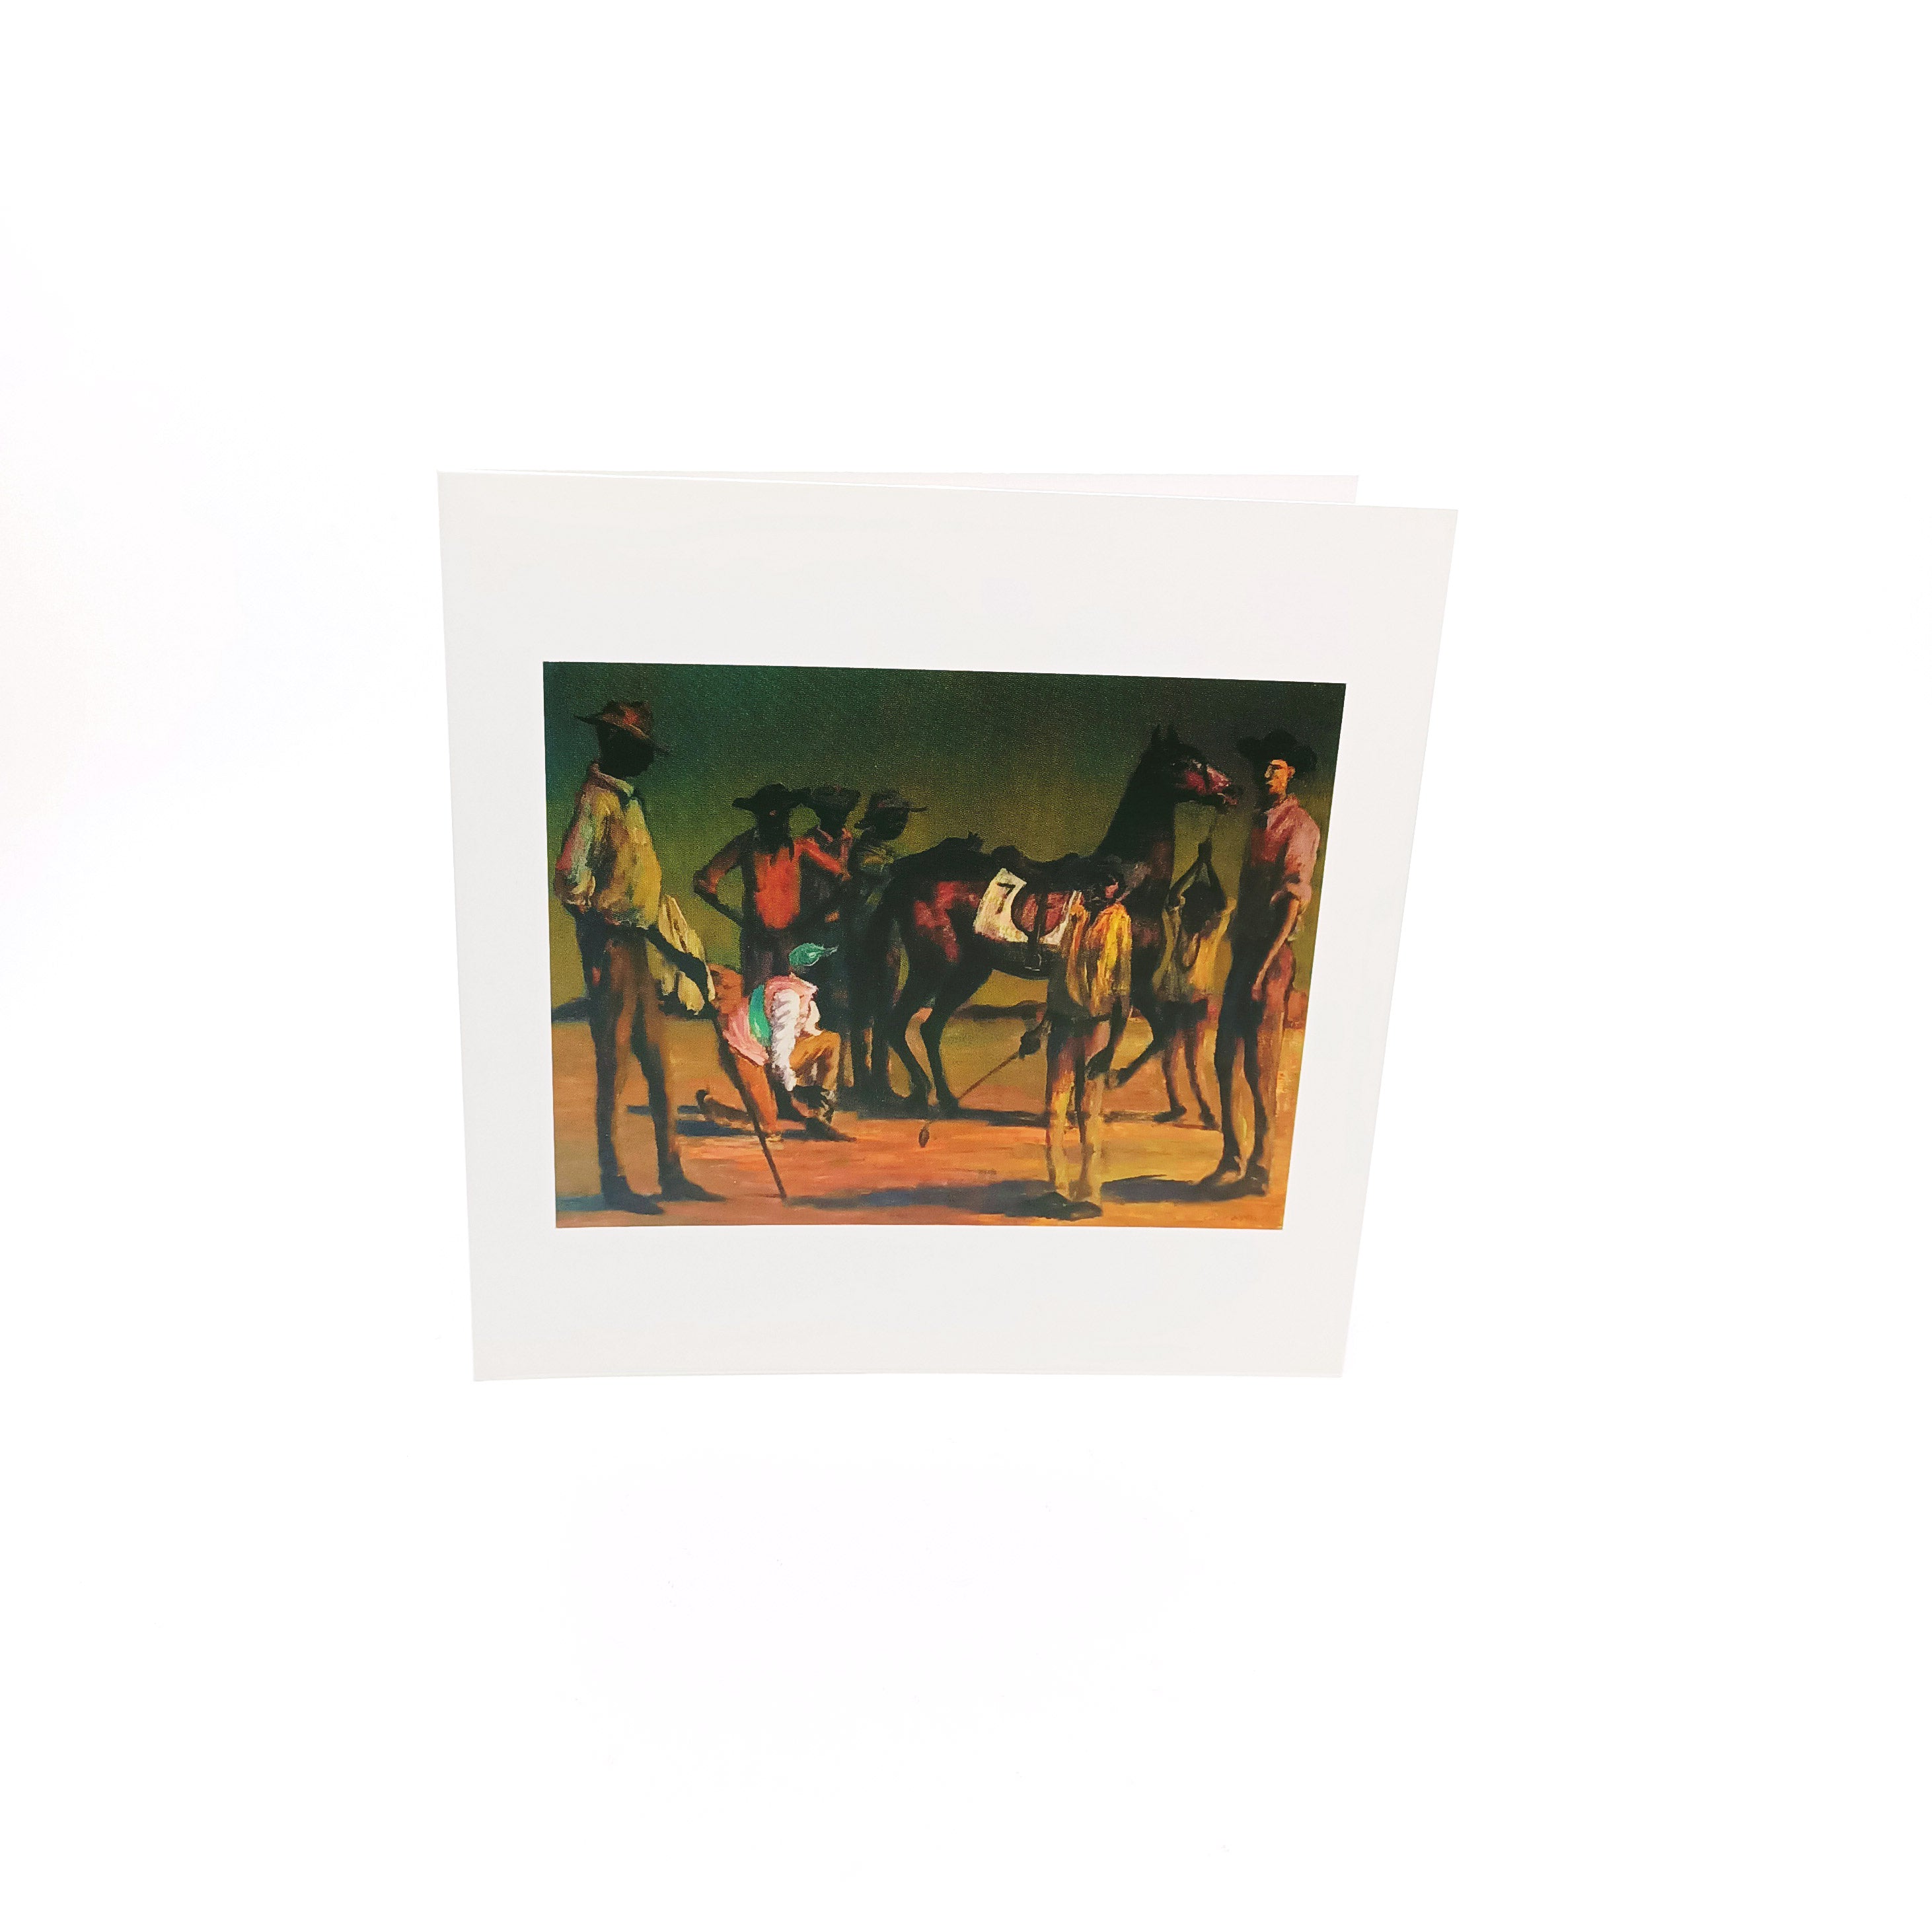 TarraWarra Museum of Art — Greeting Card packs